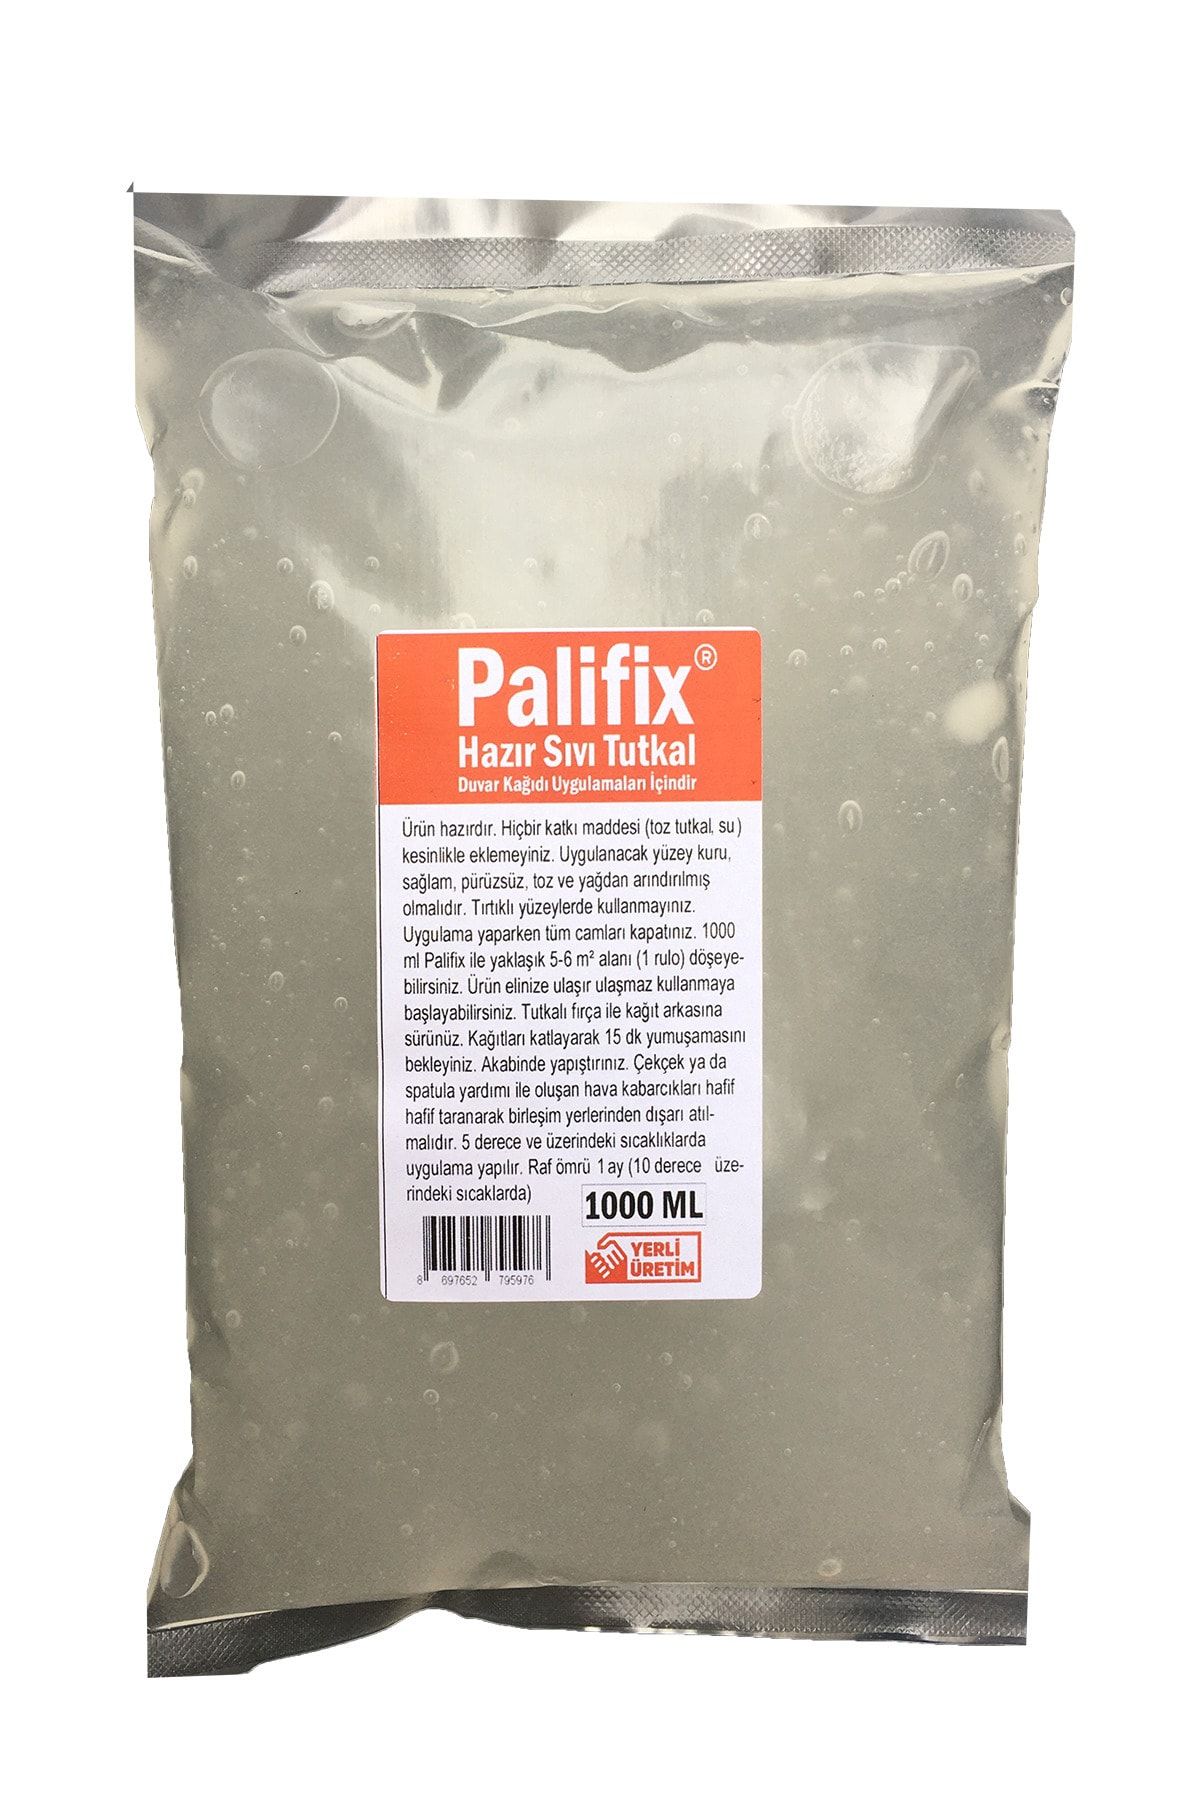 Genel Markalar 1lt Palifix Hazır Duvar Kağıdı Tutkalı Yapıştırıcısı Ilacı Sıvı Tutkal Glitolin (5-6M²-1 RULO)